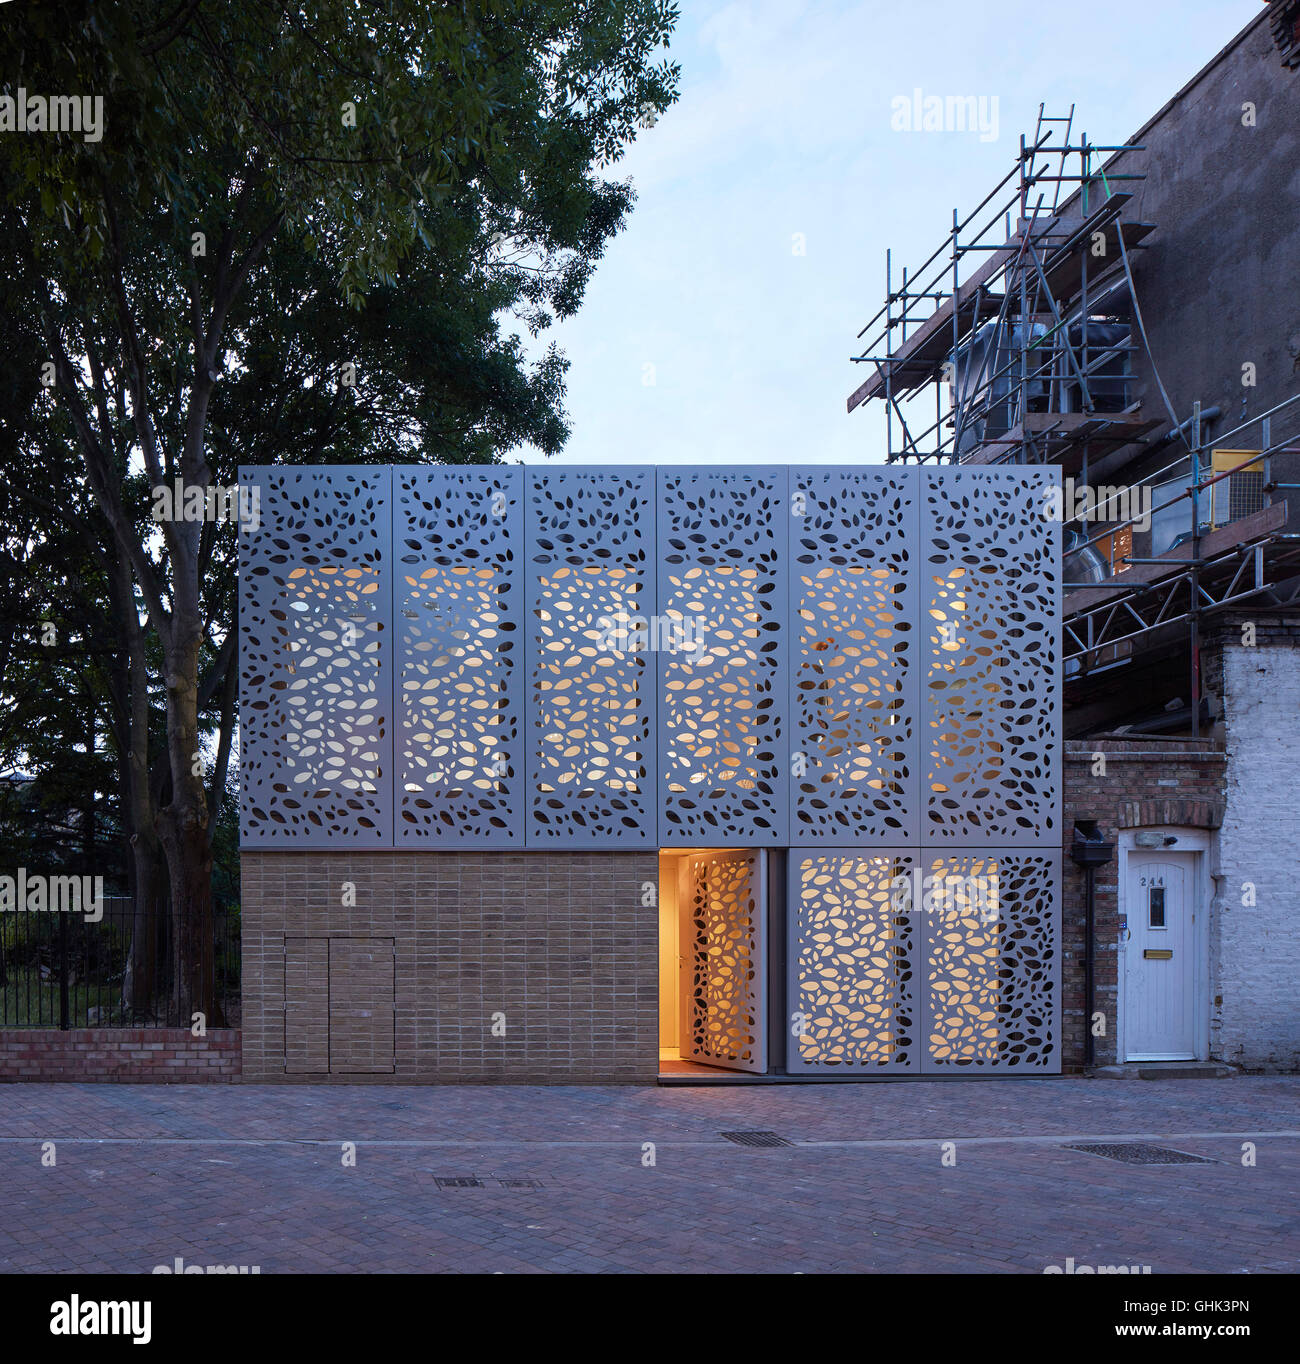 Vordere Ansicht in der Abenddämmerung mit offenen Eingangstür. Haus in Brixton, London, Vereinigtes Königreich. Architekt: Horden Cherry Lee Architects Ltd, 2016. Stockfoto